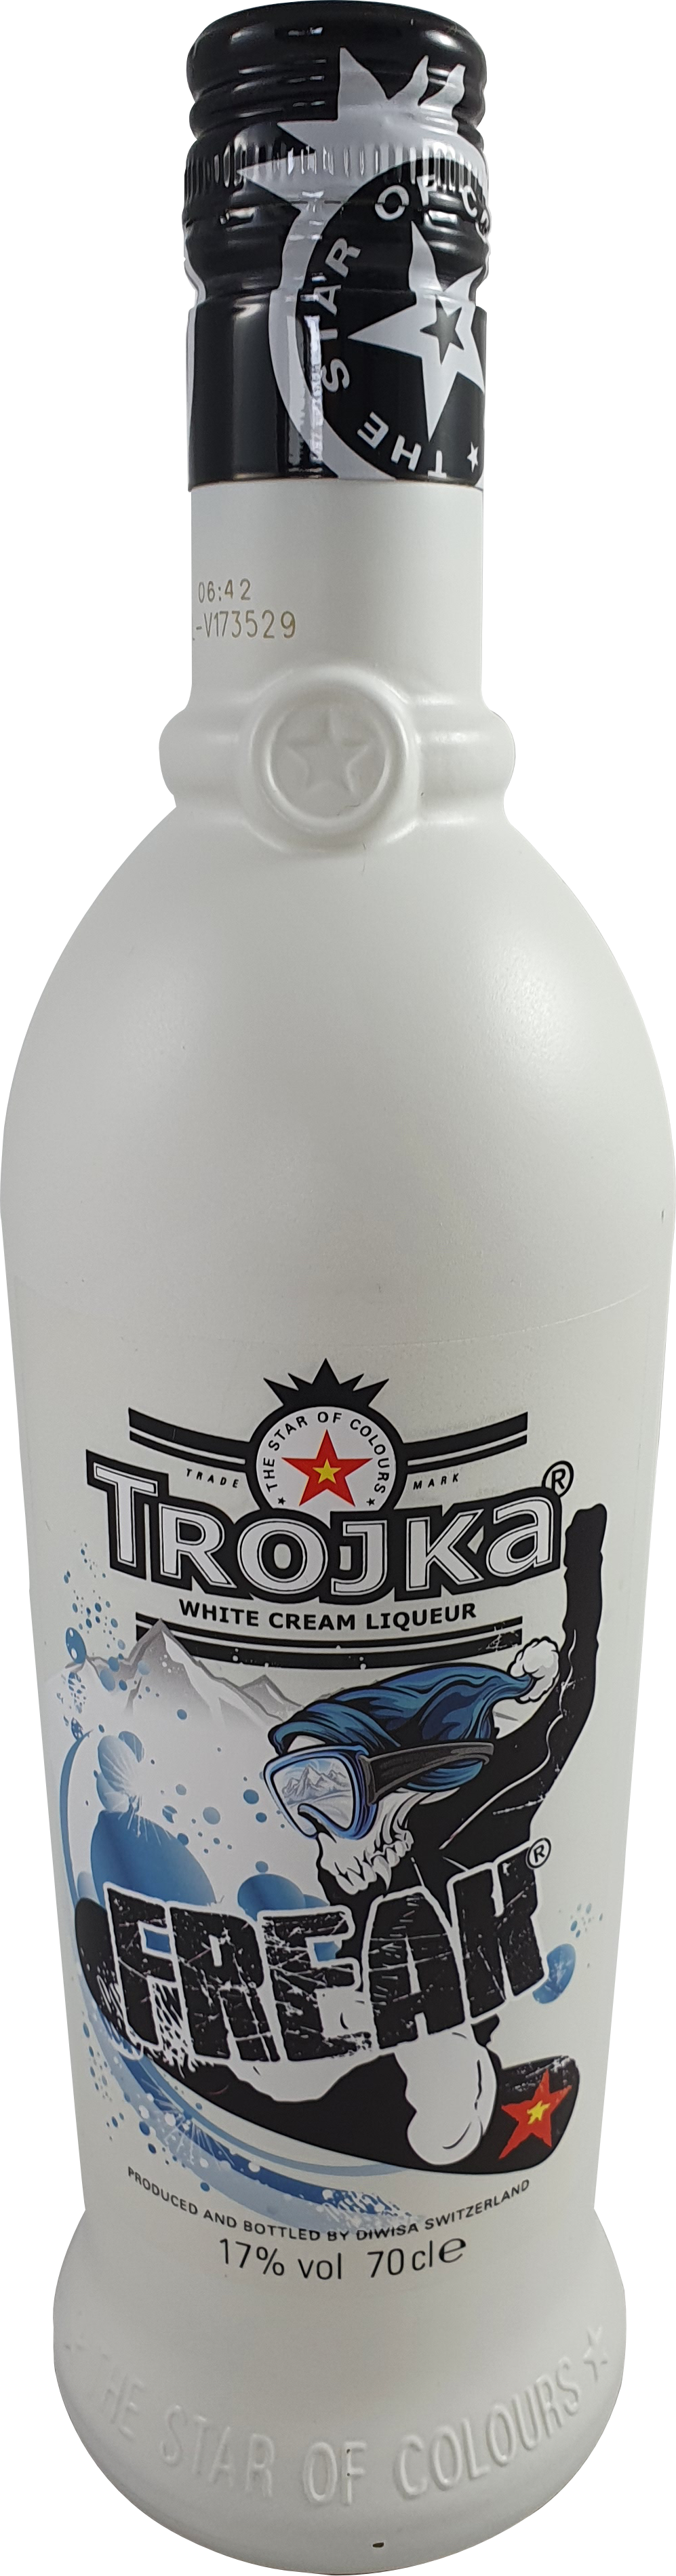 Trojka Vodka Cream (Freak) 17% 